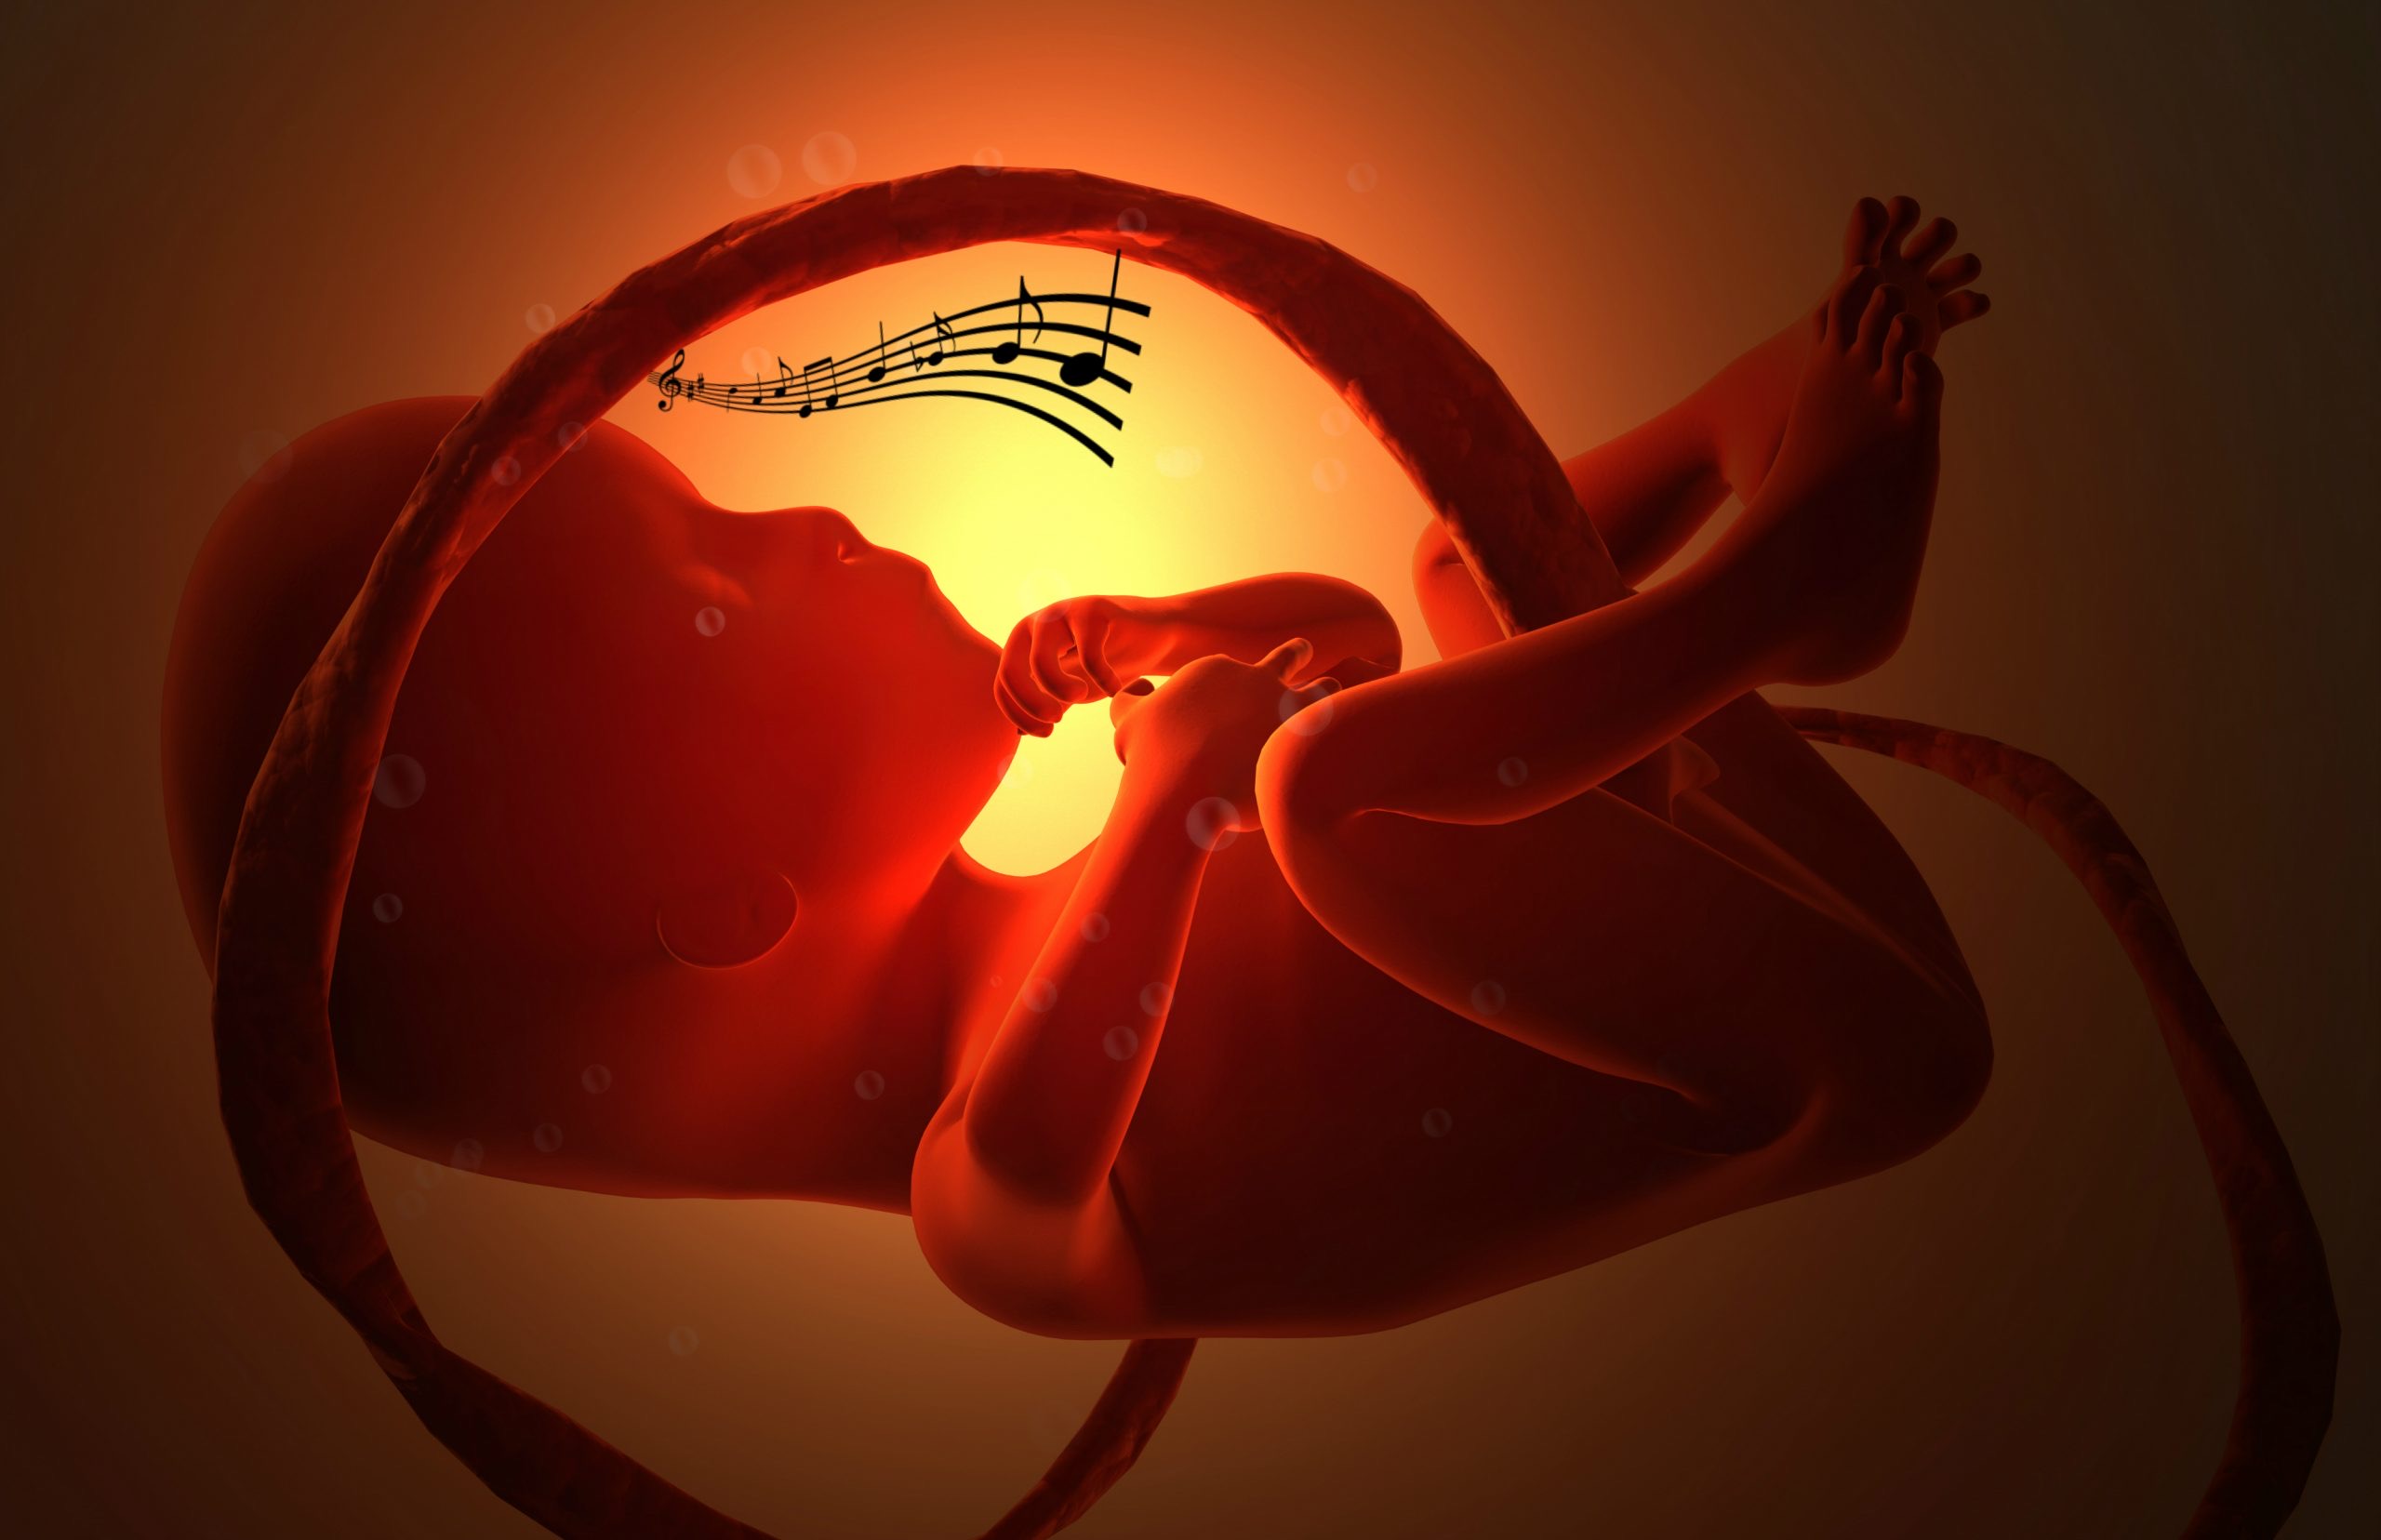 Âm nhạc cho bà bầu: Hướng dẫn cách nghe nhạc CHUẨN